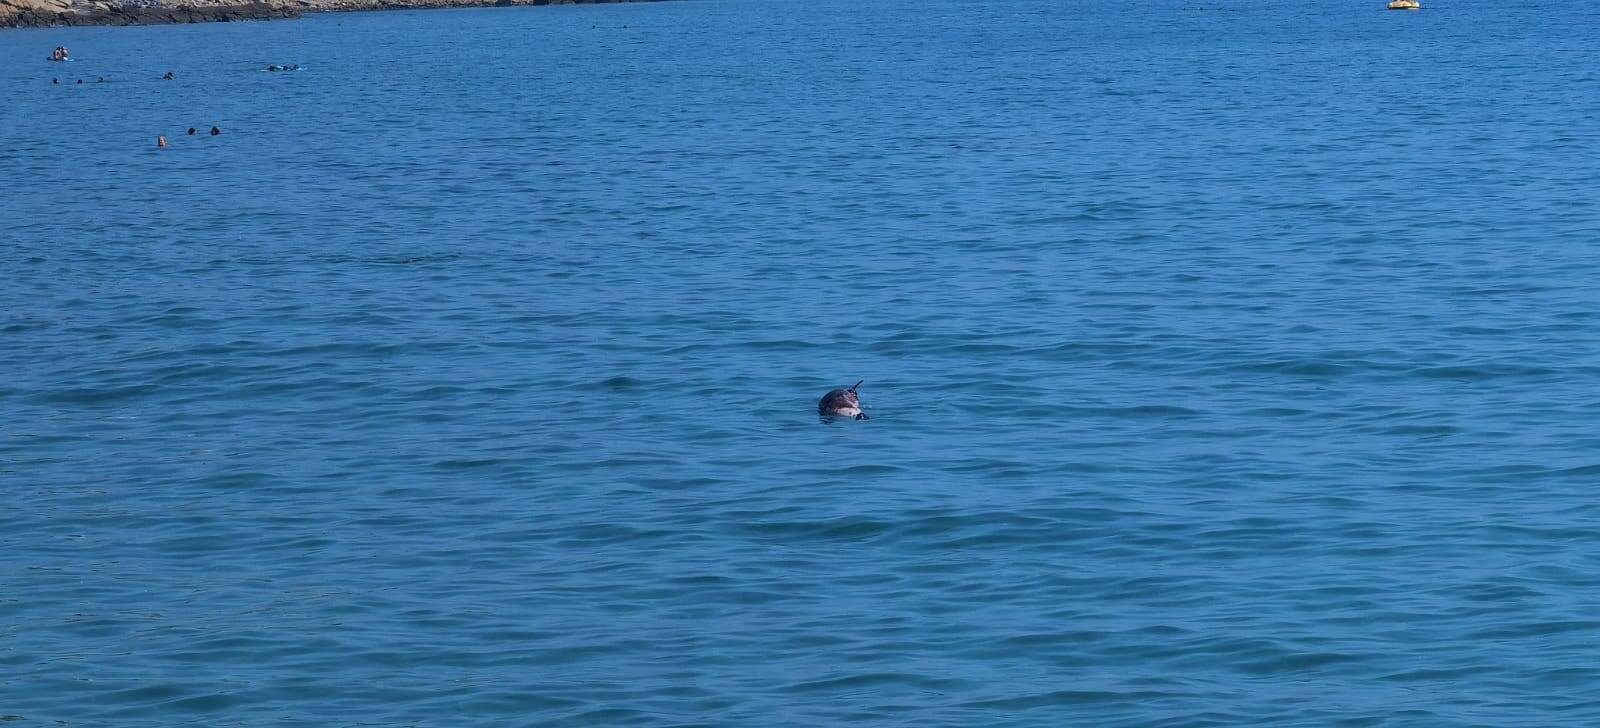 delfino trovato morto al largo di sanremo